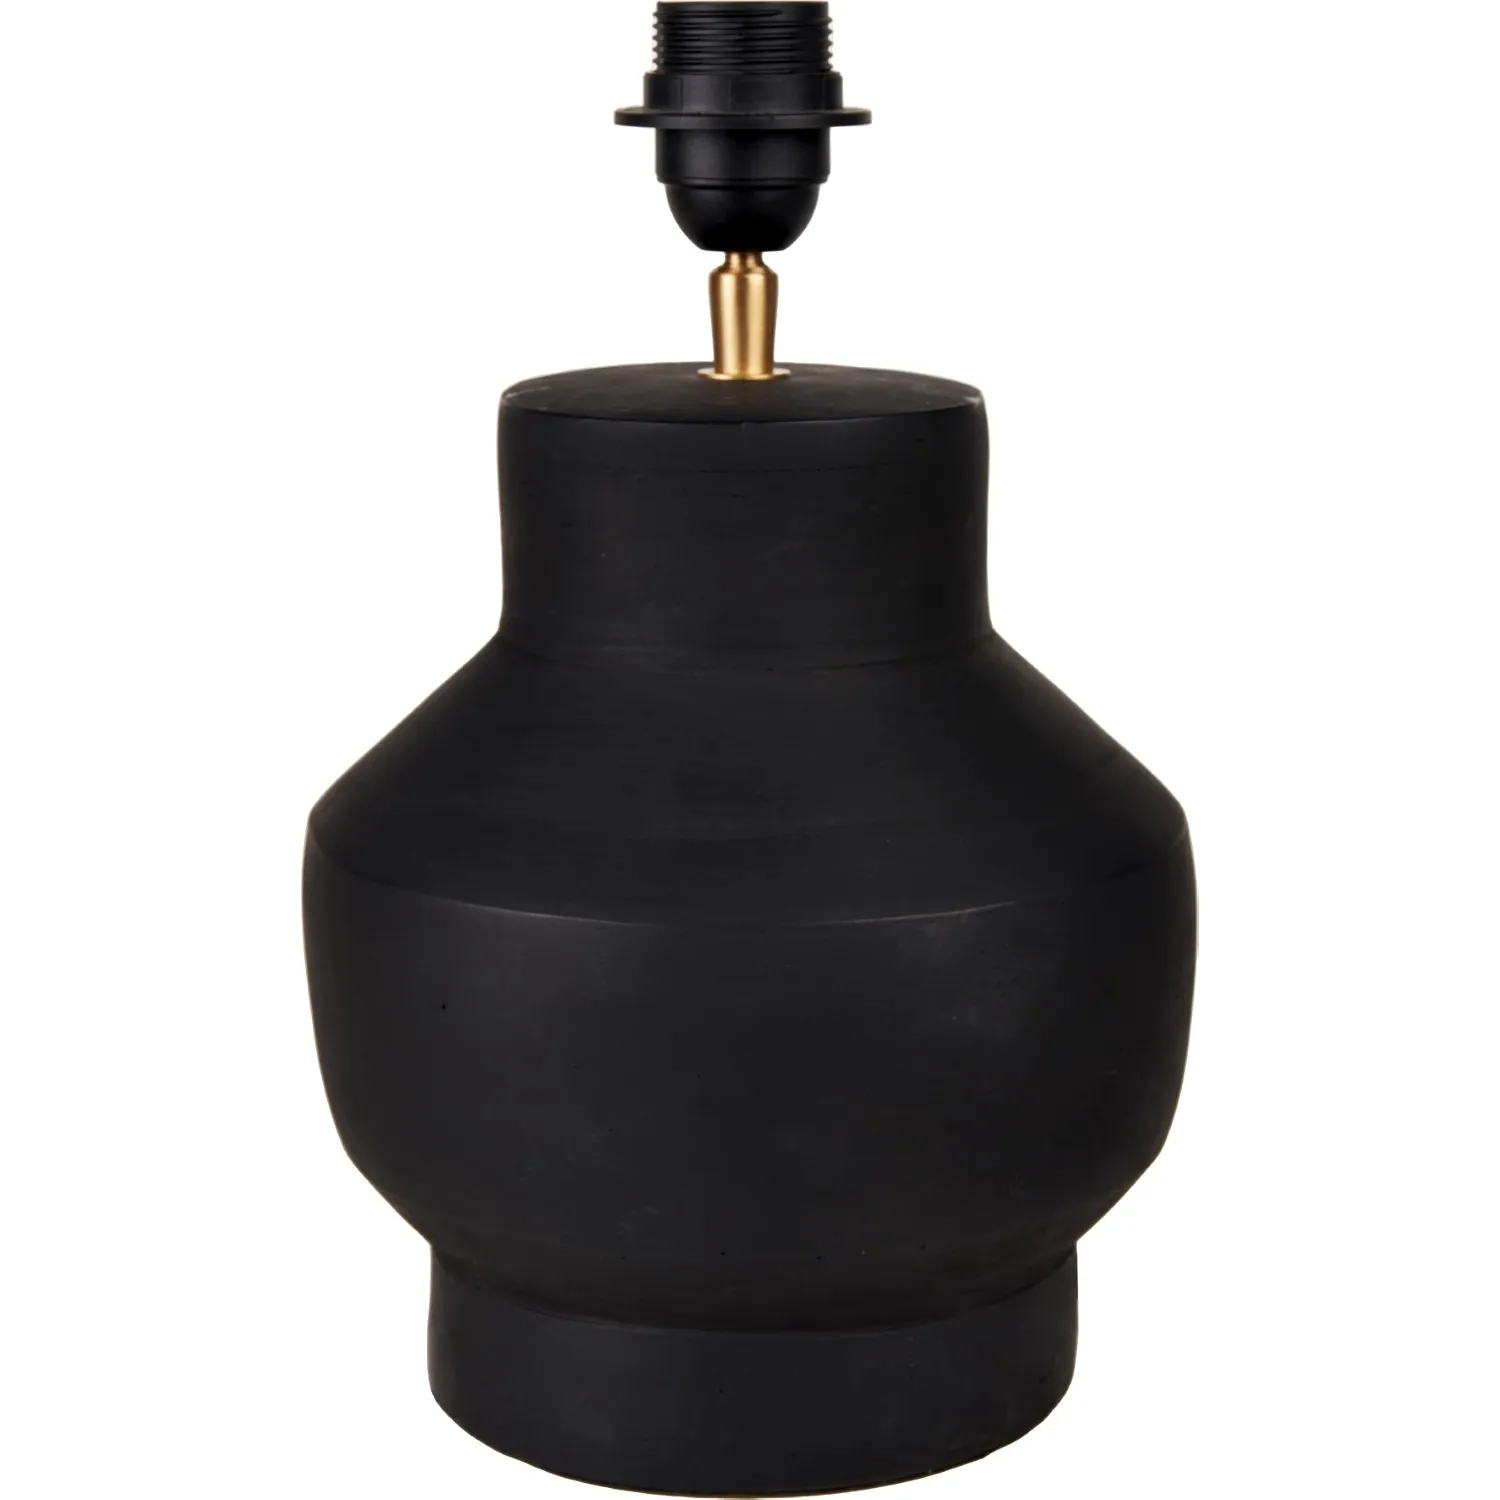 Inna Black Urn Terracotta Table Lamp